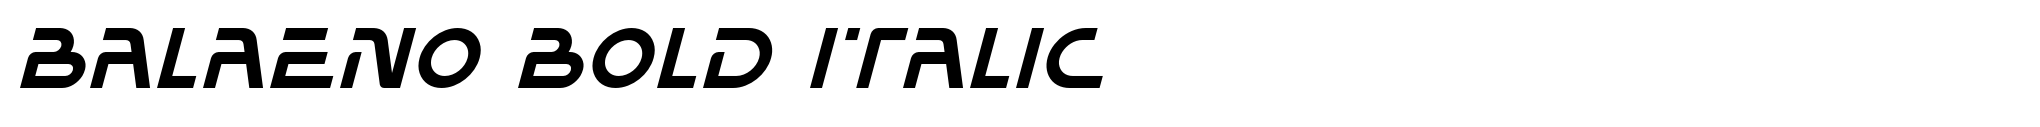 Balaeno Bold Italic image